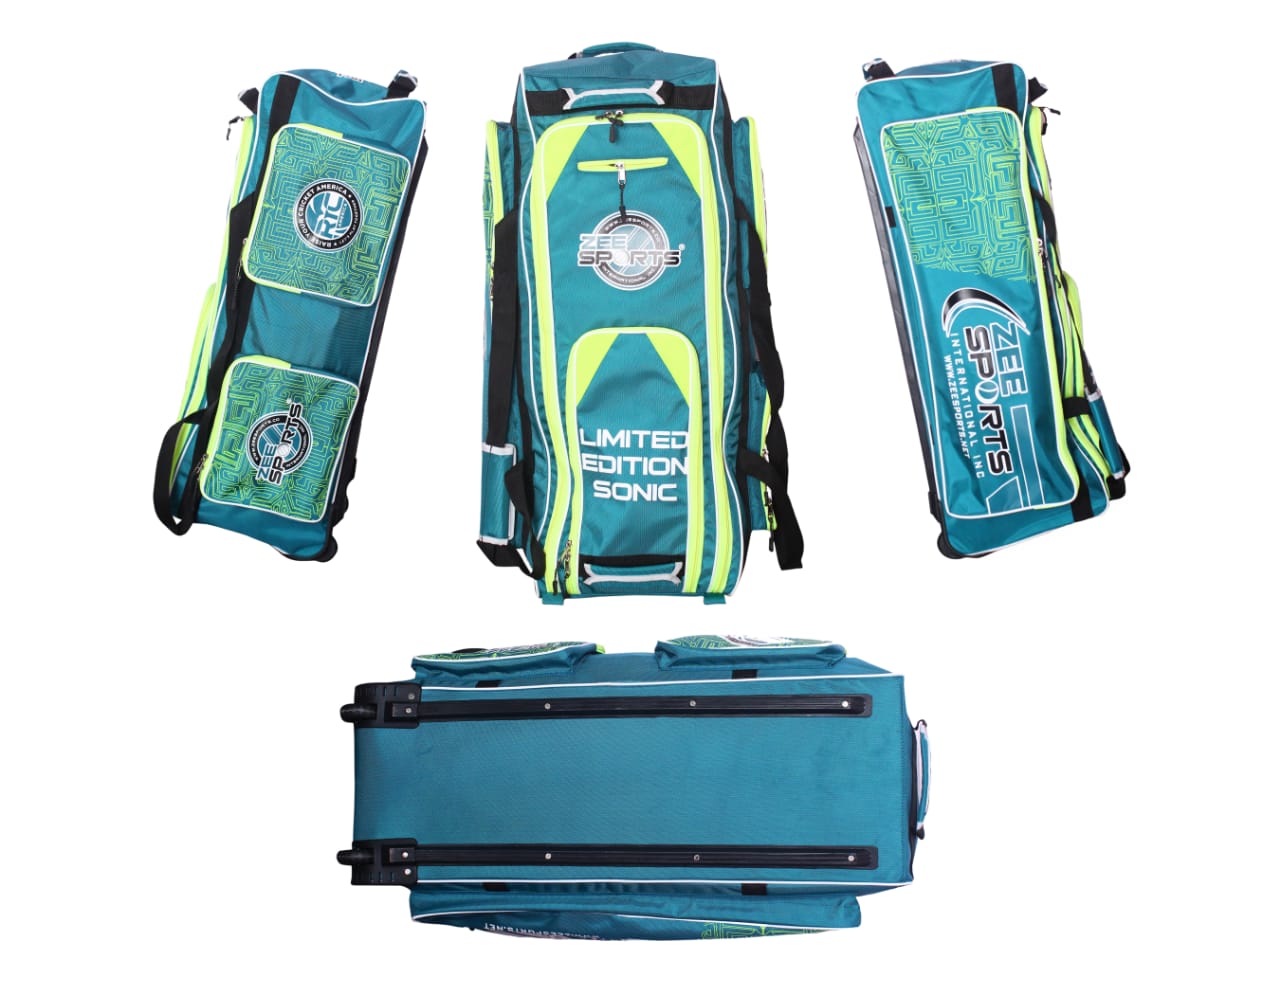 Zee Sports Kit Bag Sonic Wheelie